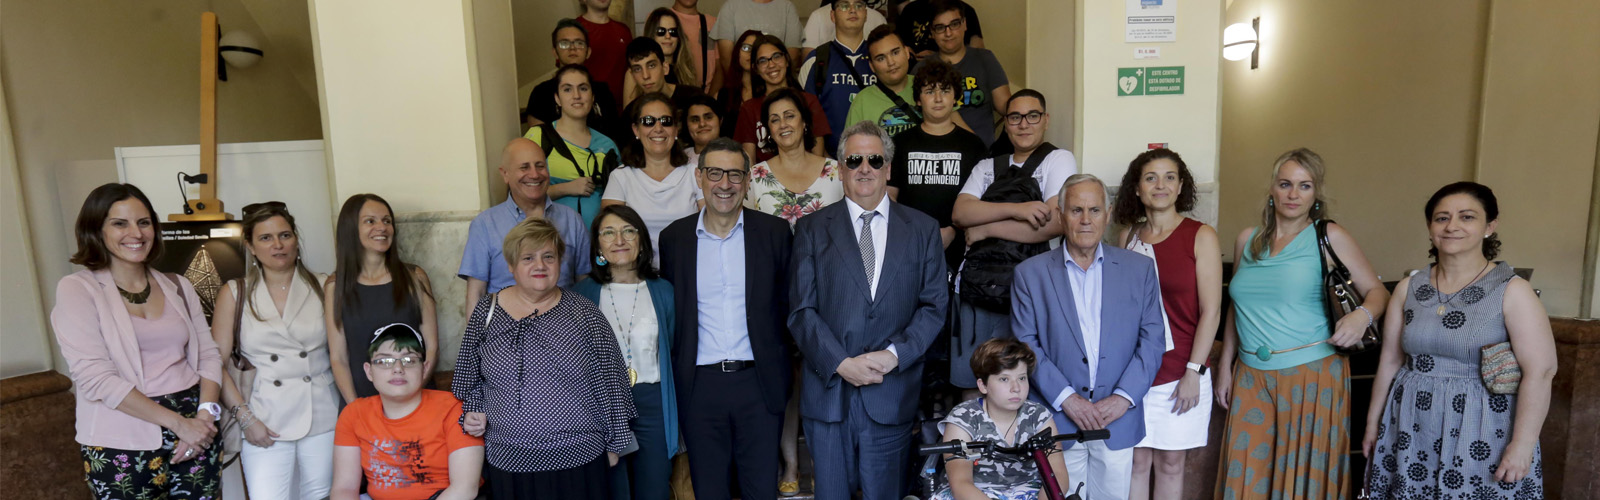 Nota de prensa - Comienza el ‘Campus Inclusivo, Campus Sin Límites’ en la Universidad de Murcia